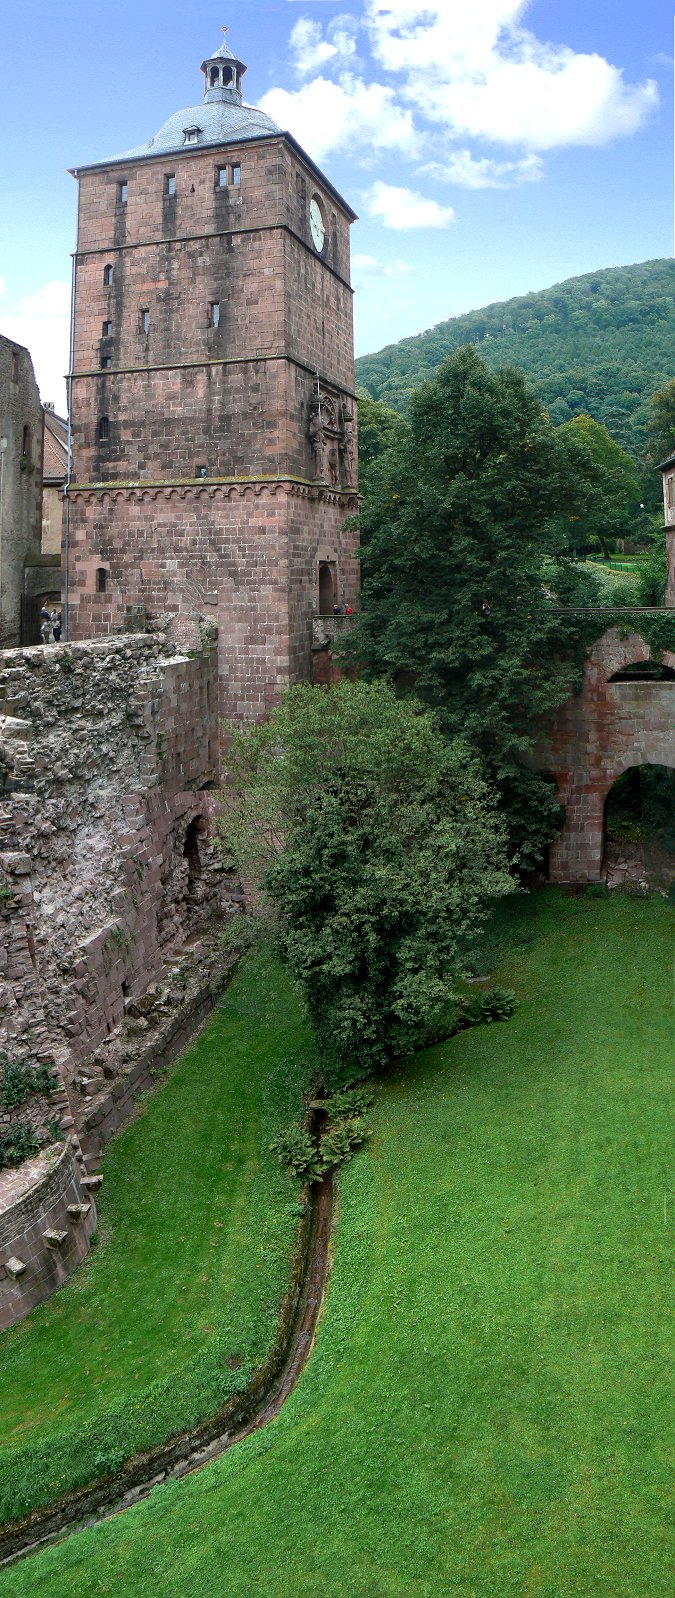 Torturm oder Uhrenturm des Heidelberger Schlosses